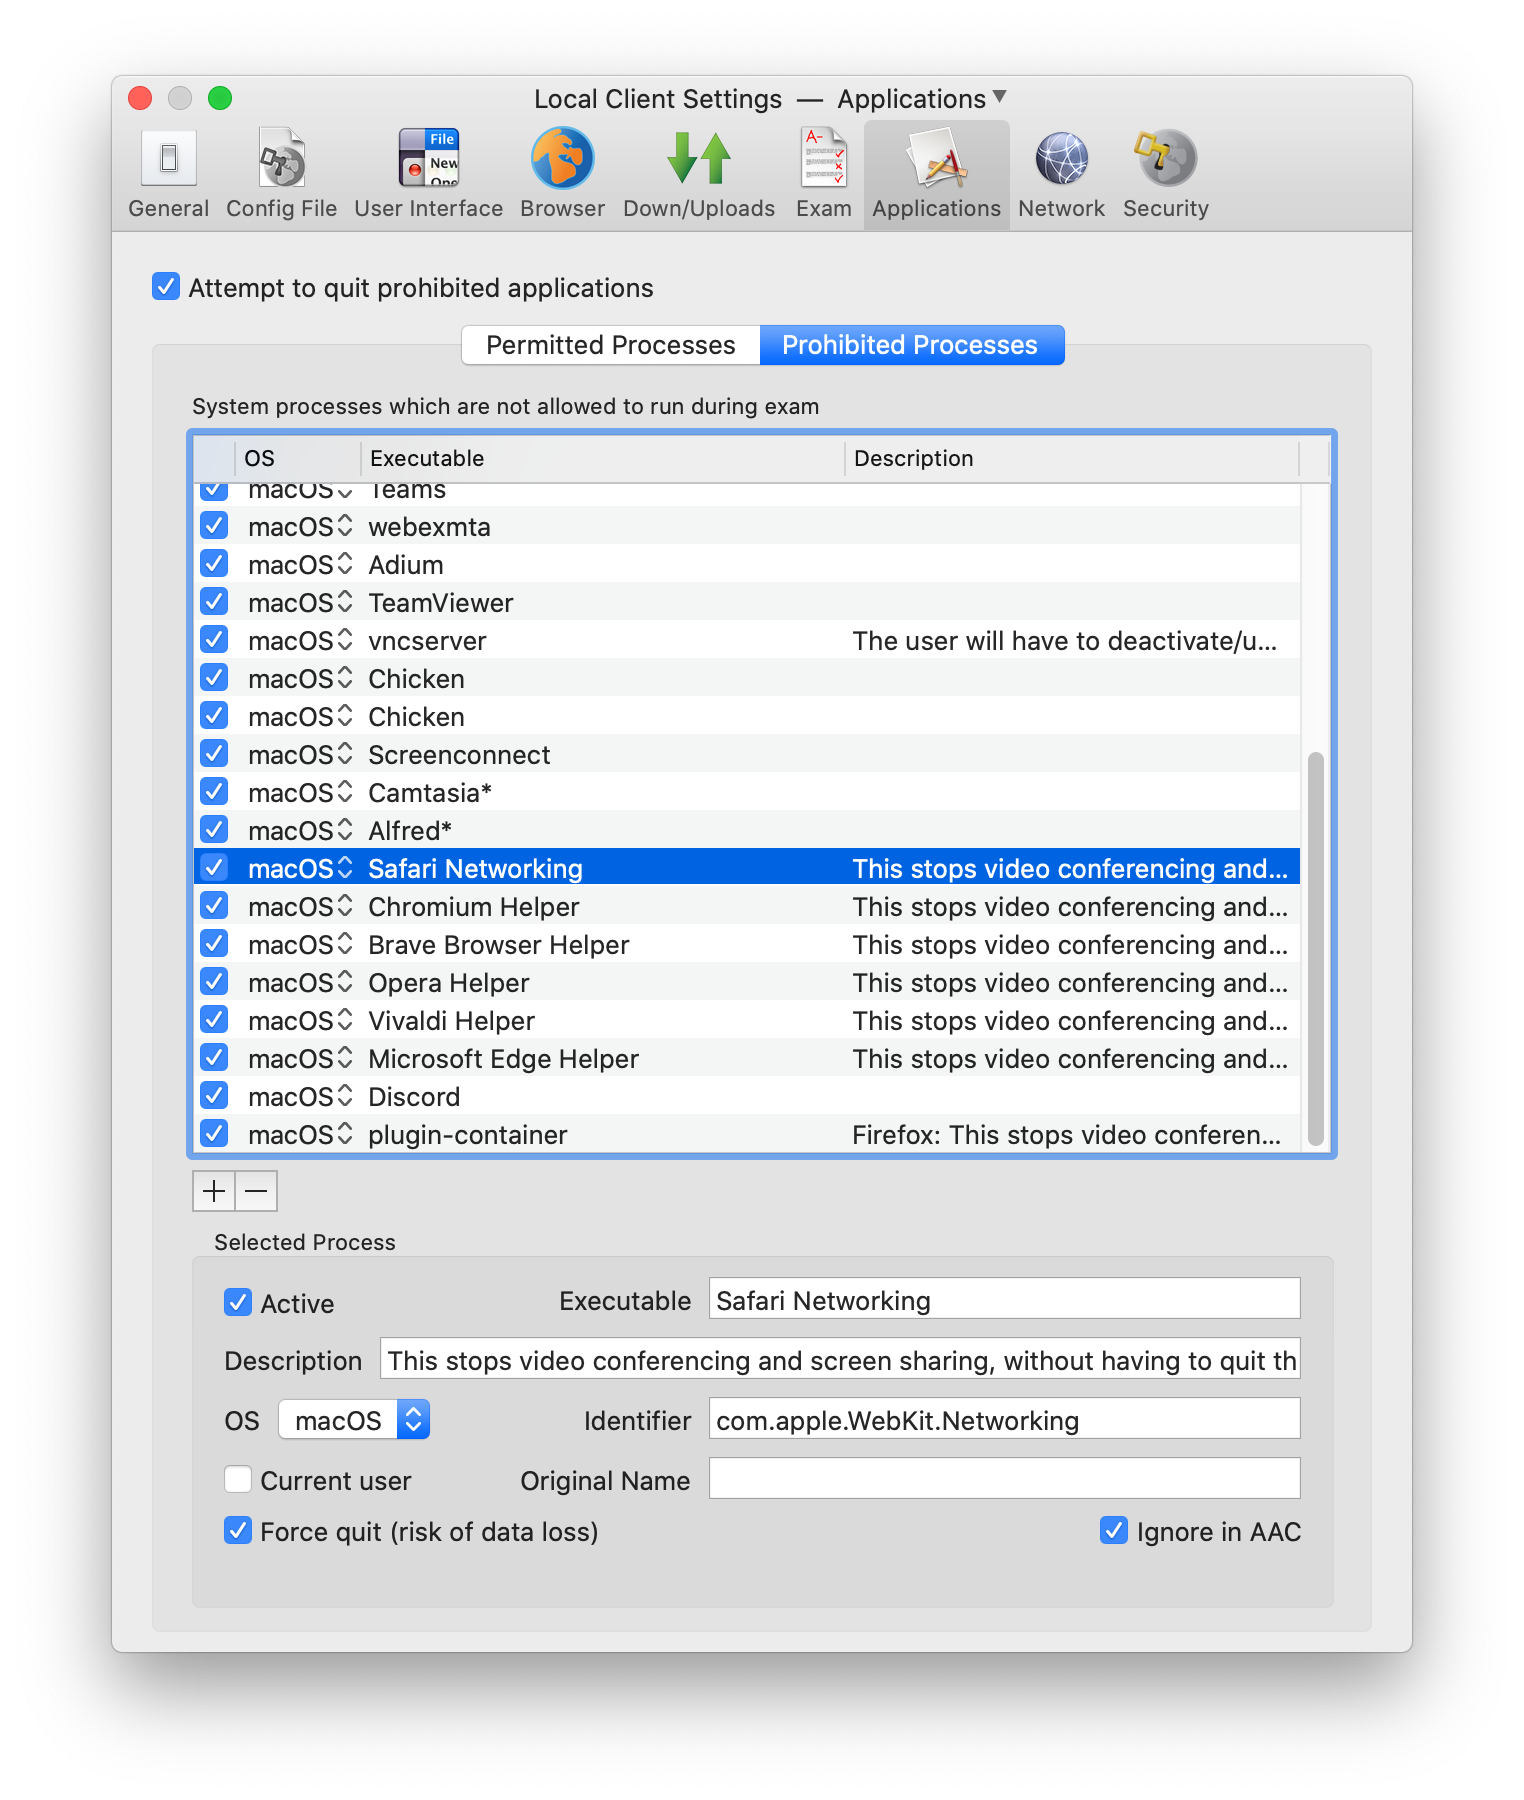 safari download for mac 10.8